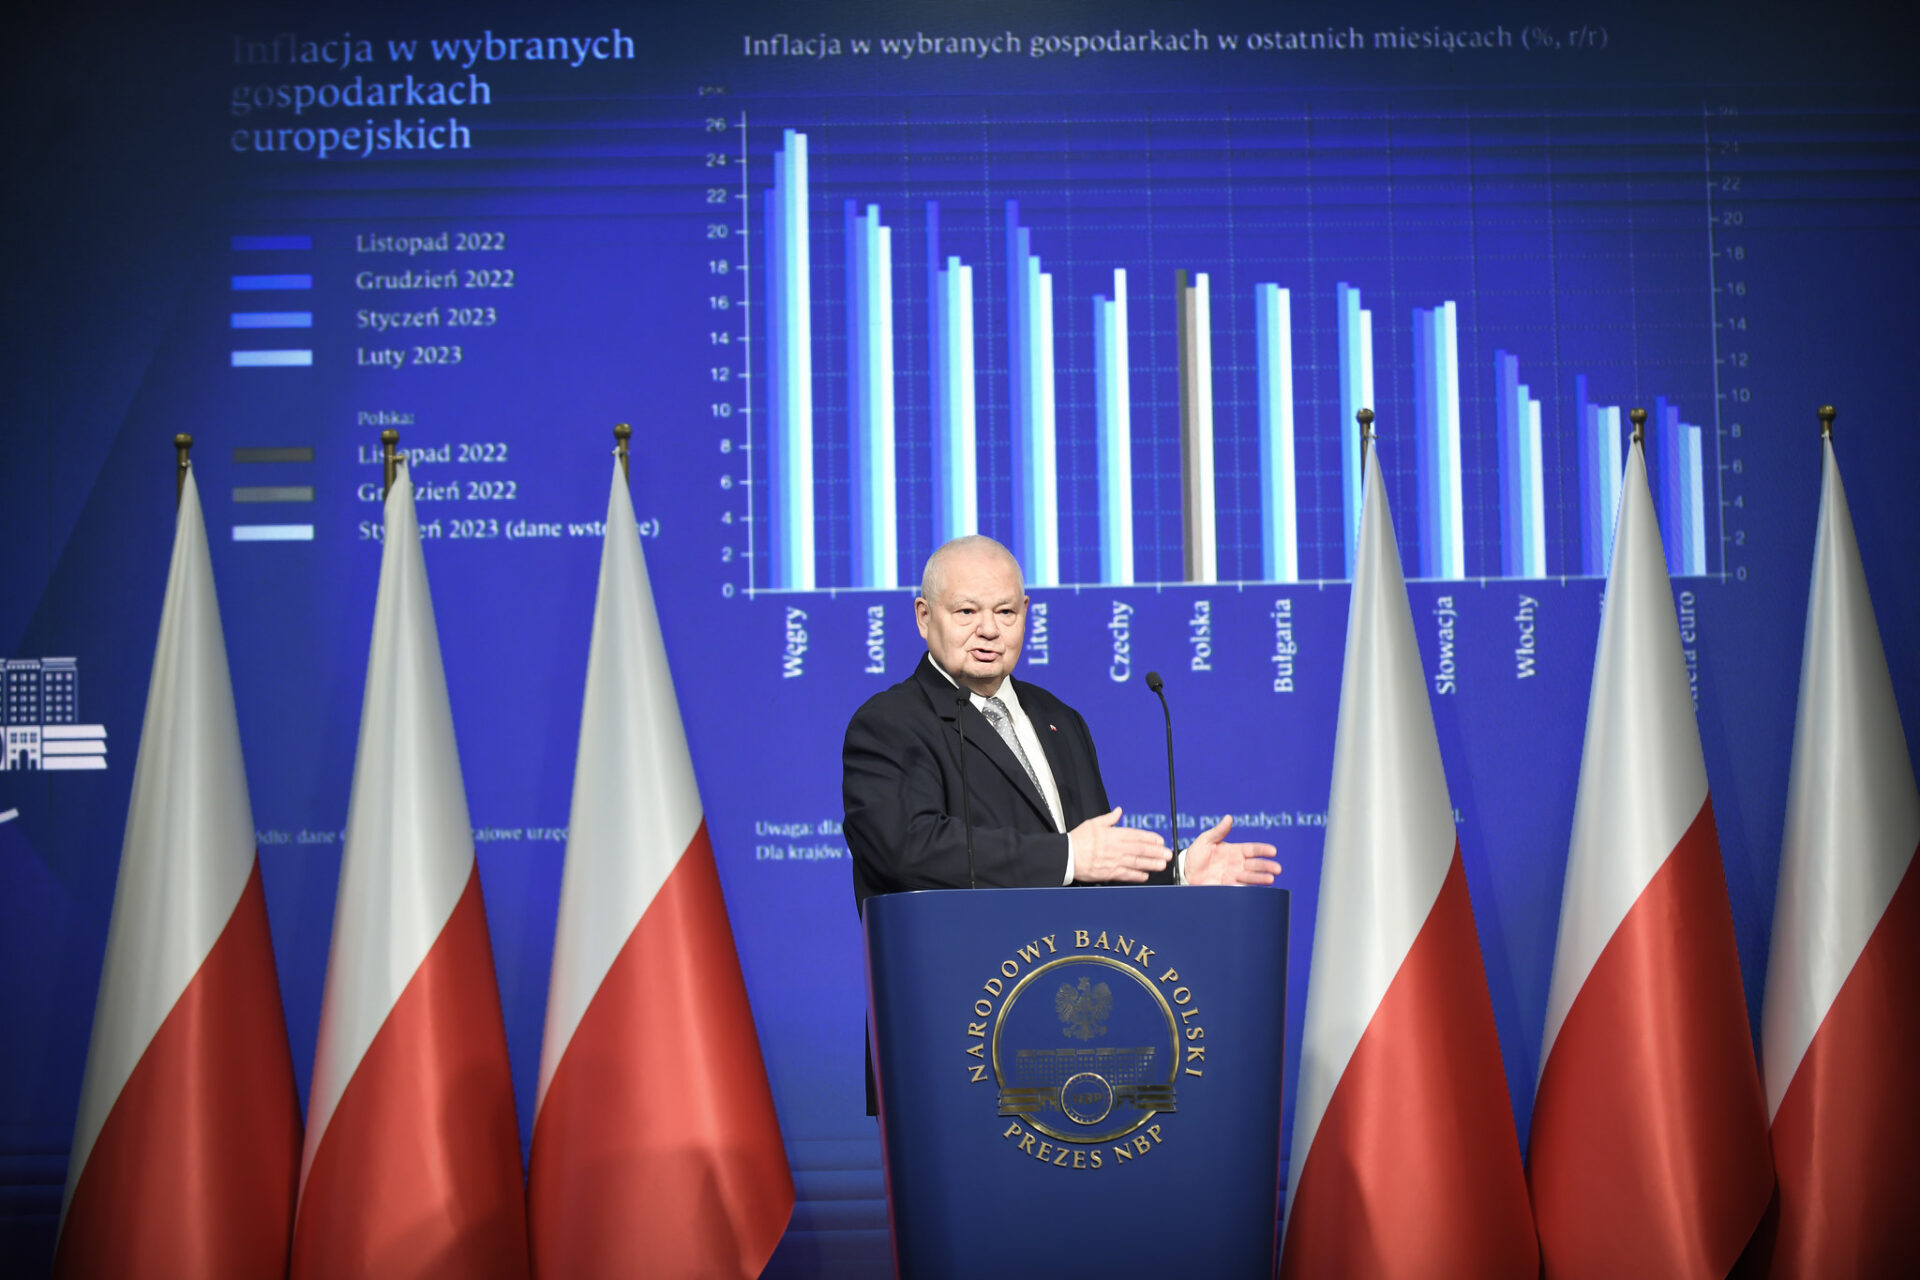 zdjęcie prezesa narodowego banku polskiego adama glapińskiego na tle wykresu przedstawiającego inflację w różnych państwach